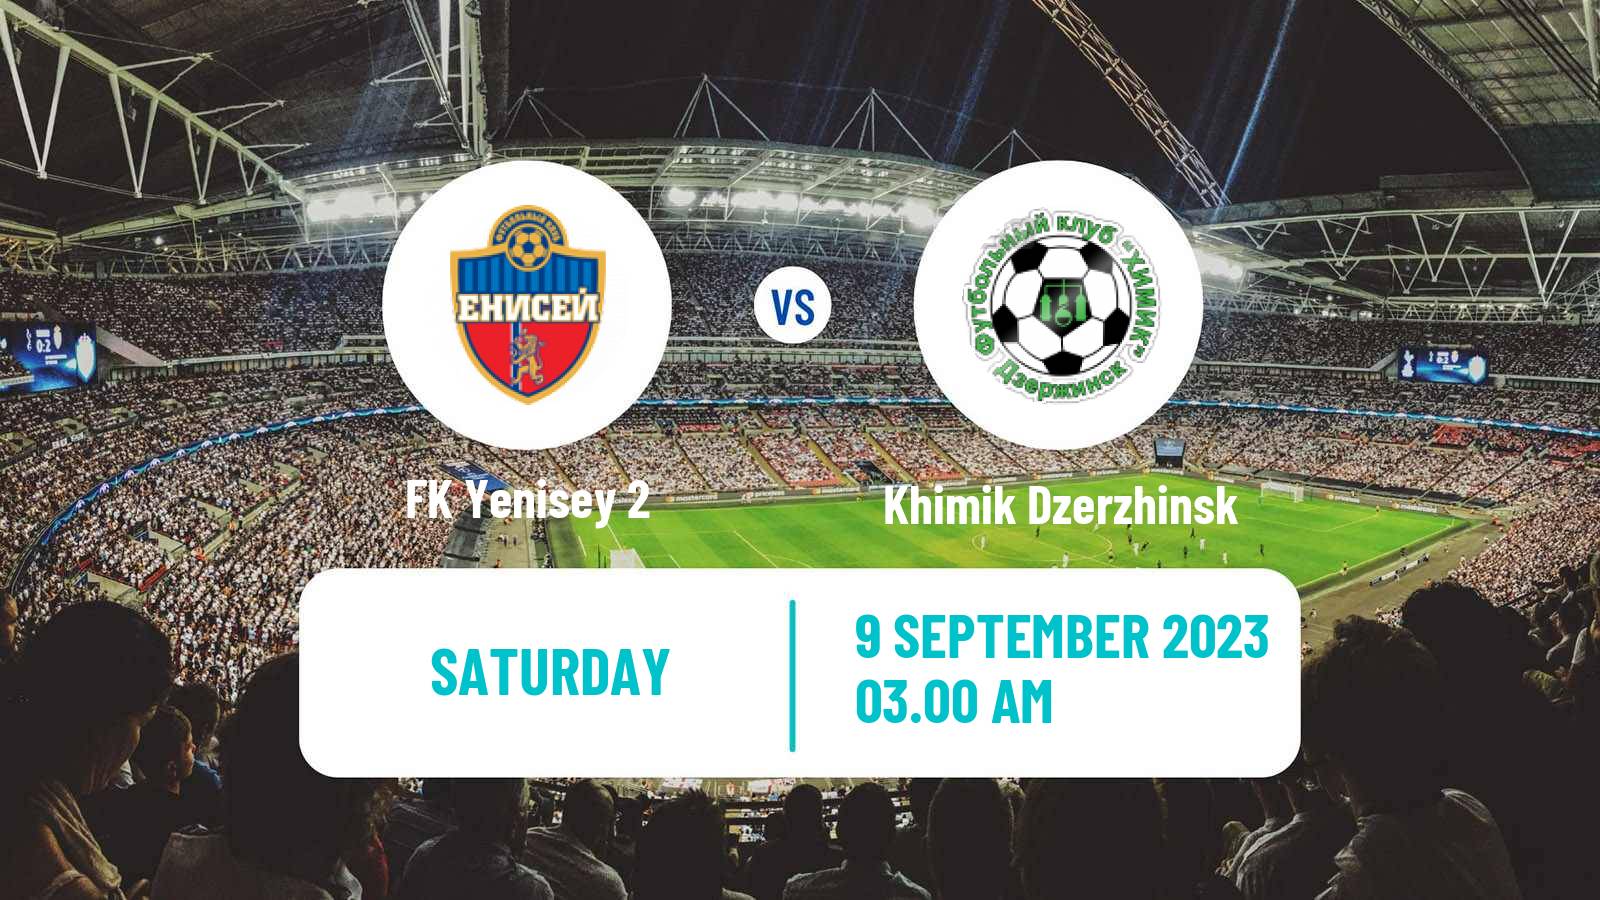 Soccer FNL 2 Division B Group 2 Yenisey 2 - Khimik Dzerzhinsk